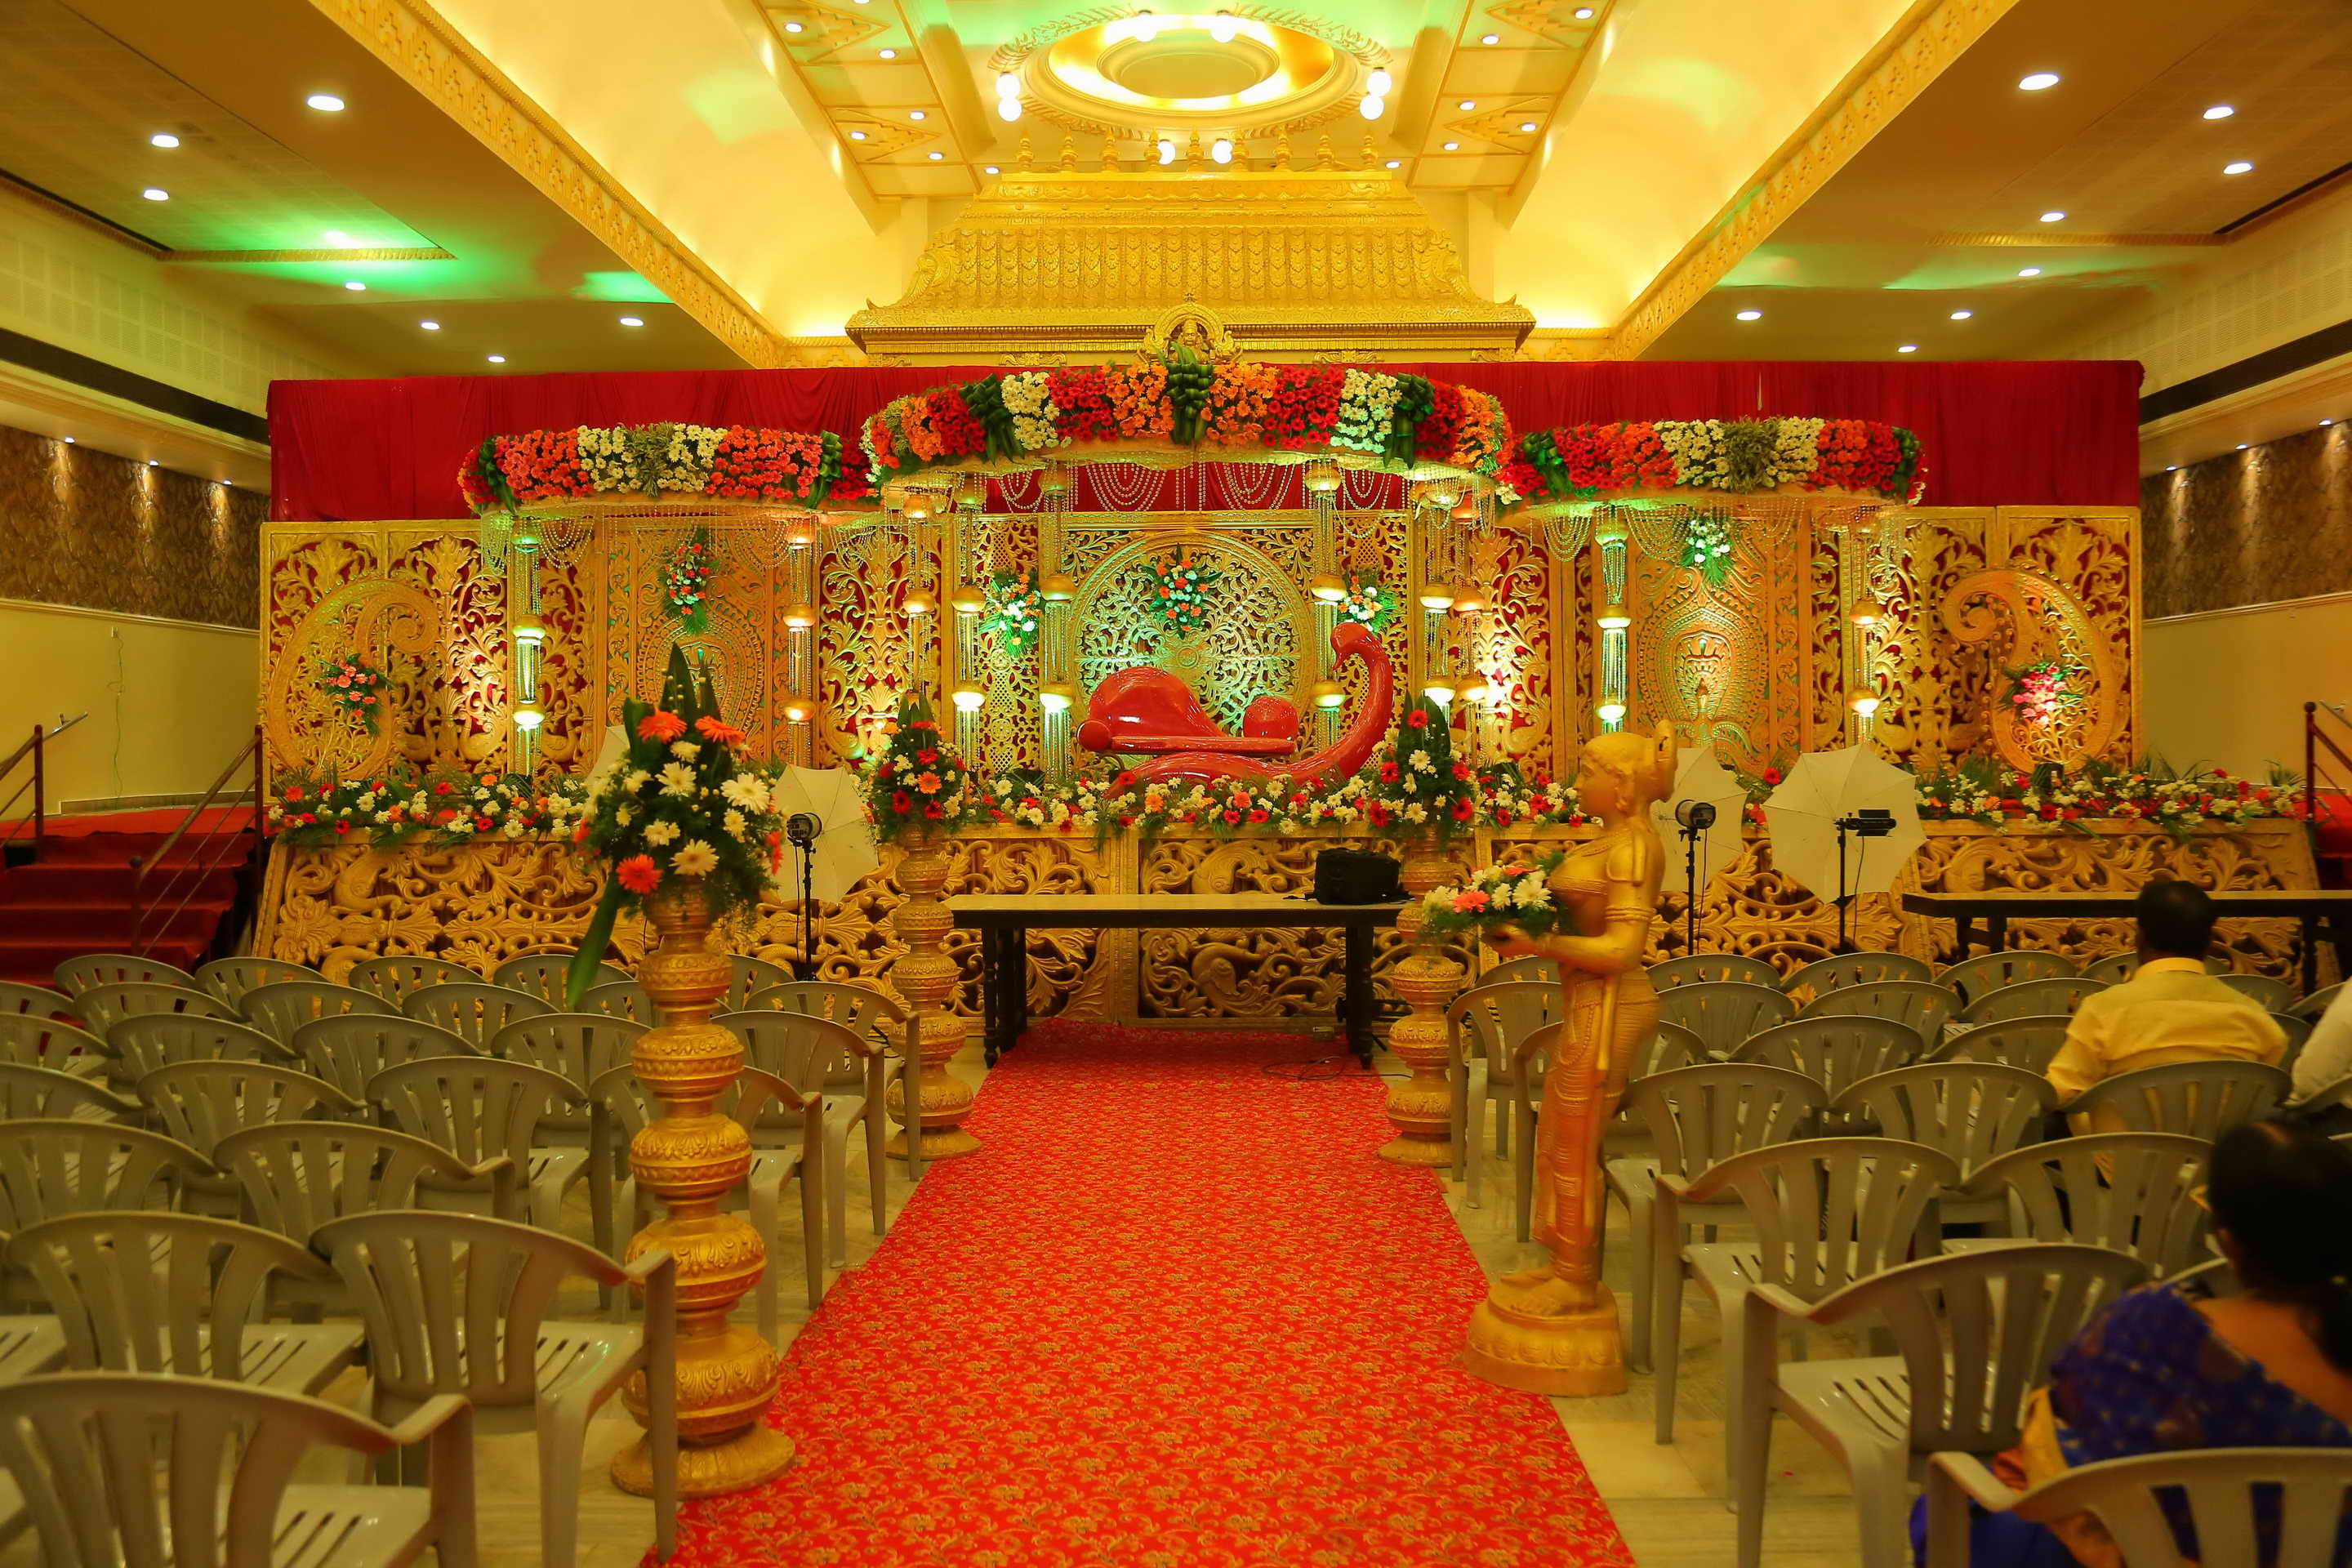 Wedding decorations jayaram thirumana nilayam